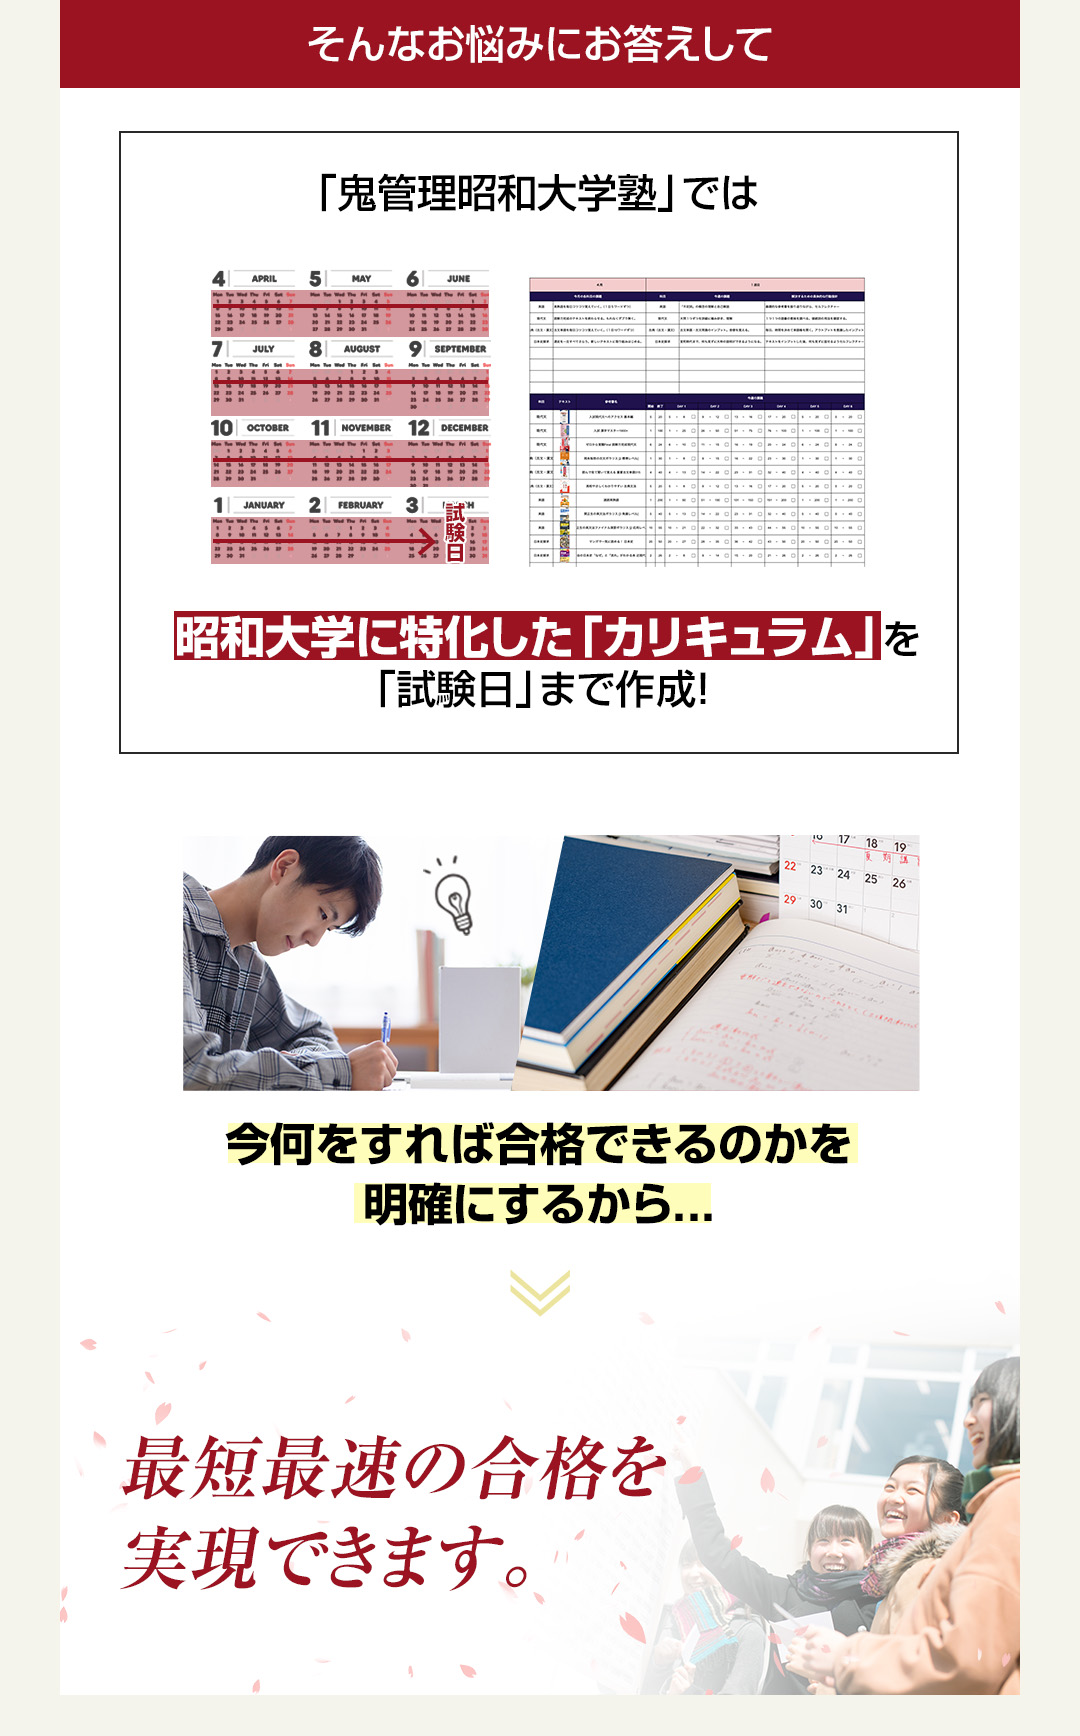 「鬼管理昭和大学塾」では昭和大学に特化した「カリキュラム」を「試験日」まで作成